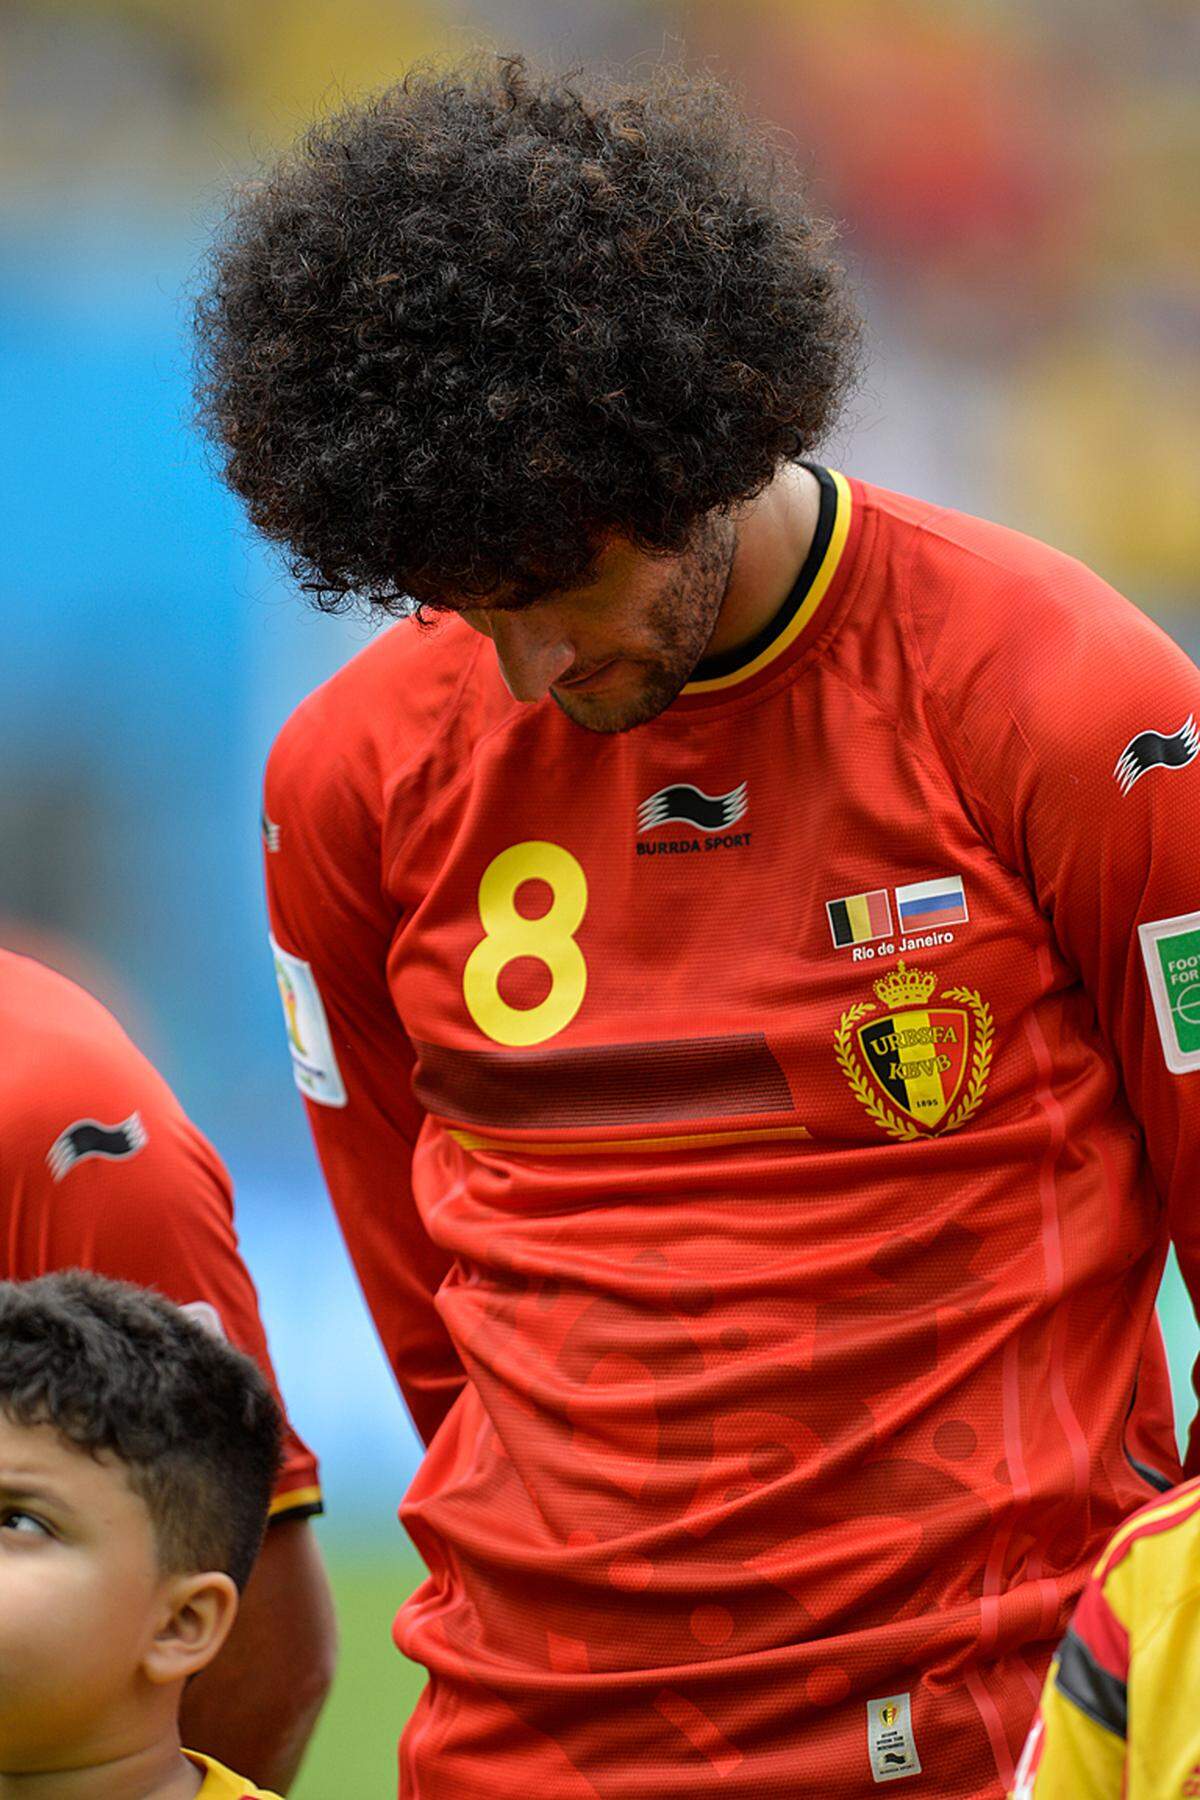 Wir verneigen uns vor der vollen Haarpracht von Marouane Fellaini aus Belgien.Haben Sie noch andere Vorschläge für die schönste Frisur der WM? Dann schicken Sie uns eine Email an feedback@diepresse.com.